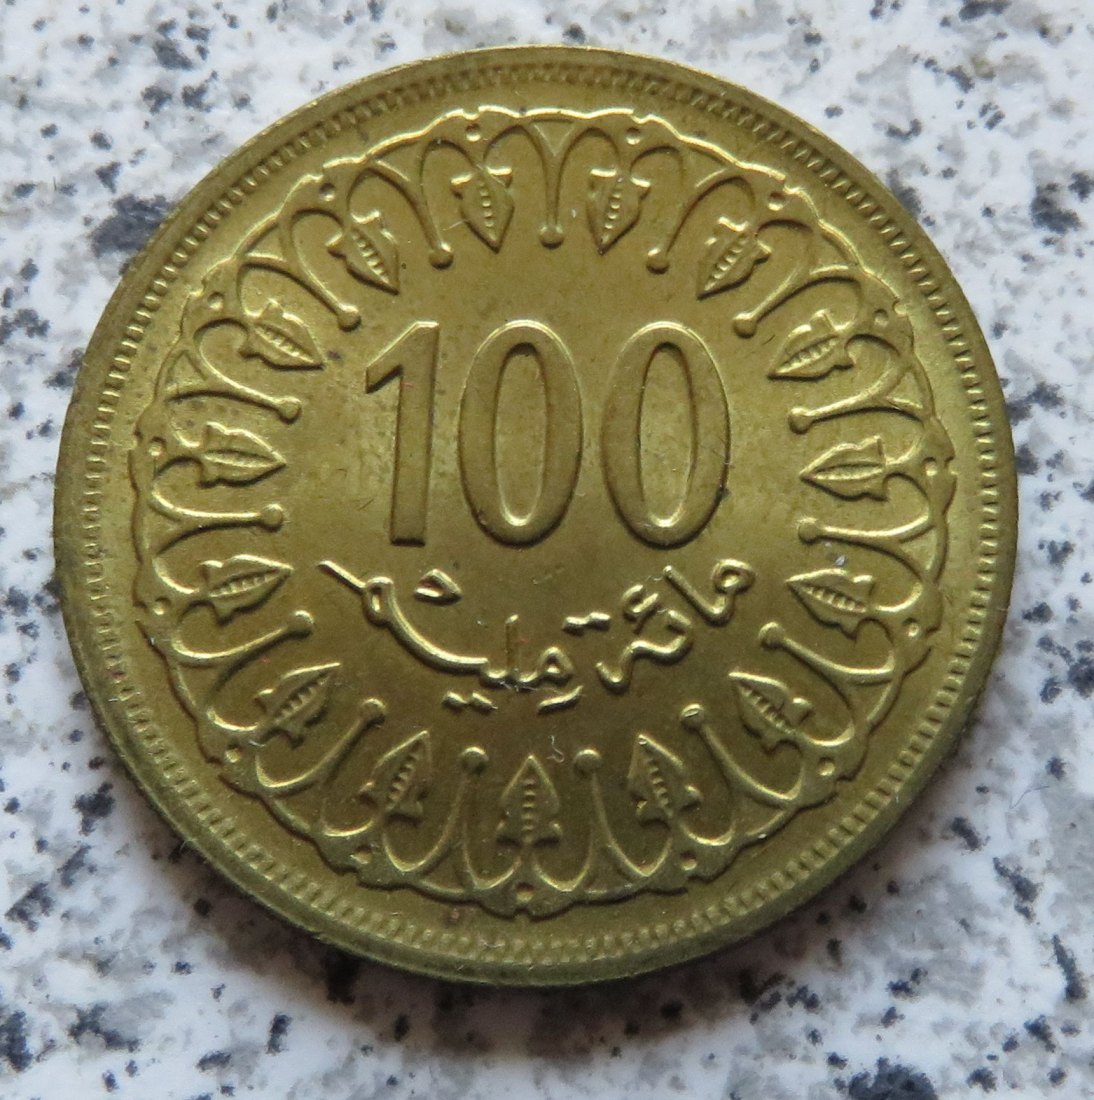  Tunesien 100 Millim 1983 funz/unz   